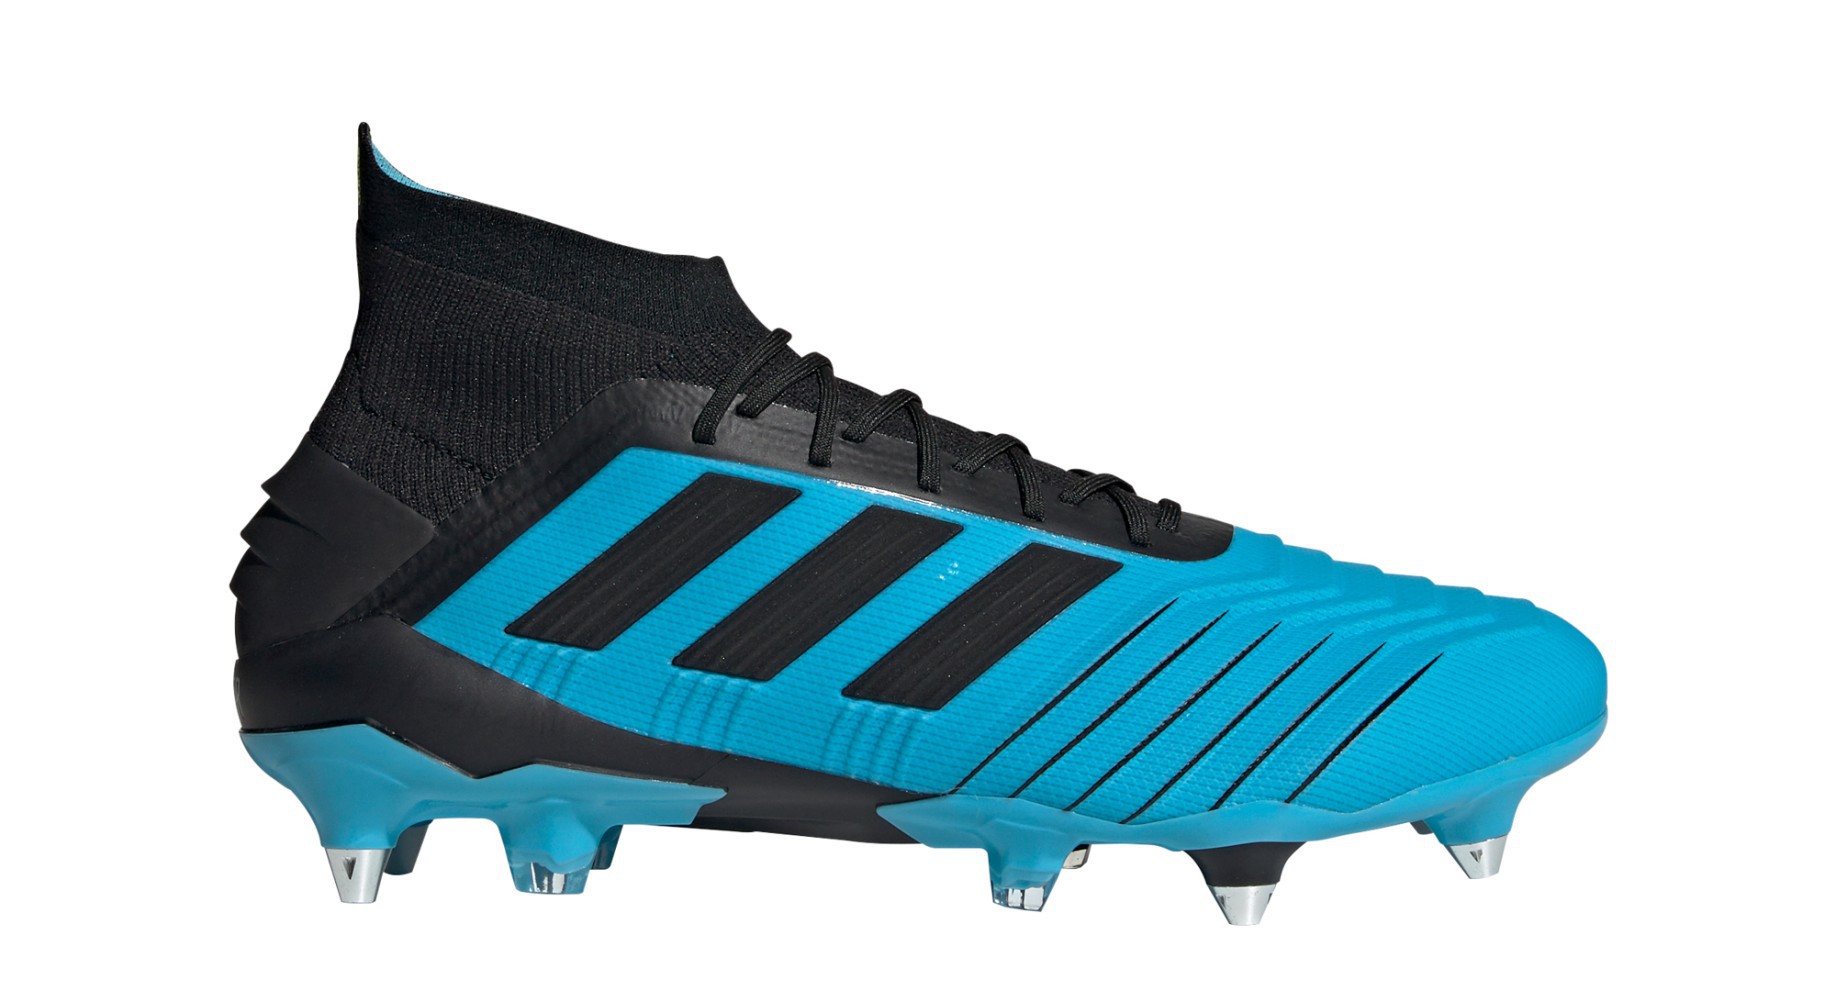 Audaz complemento Tranquilidad de espíritu Botas de fútbol Adidas Predator 19.1 SG Cableados Pack colore azul negro -  Adidas - SportIT.com